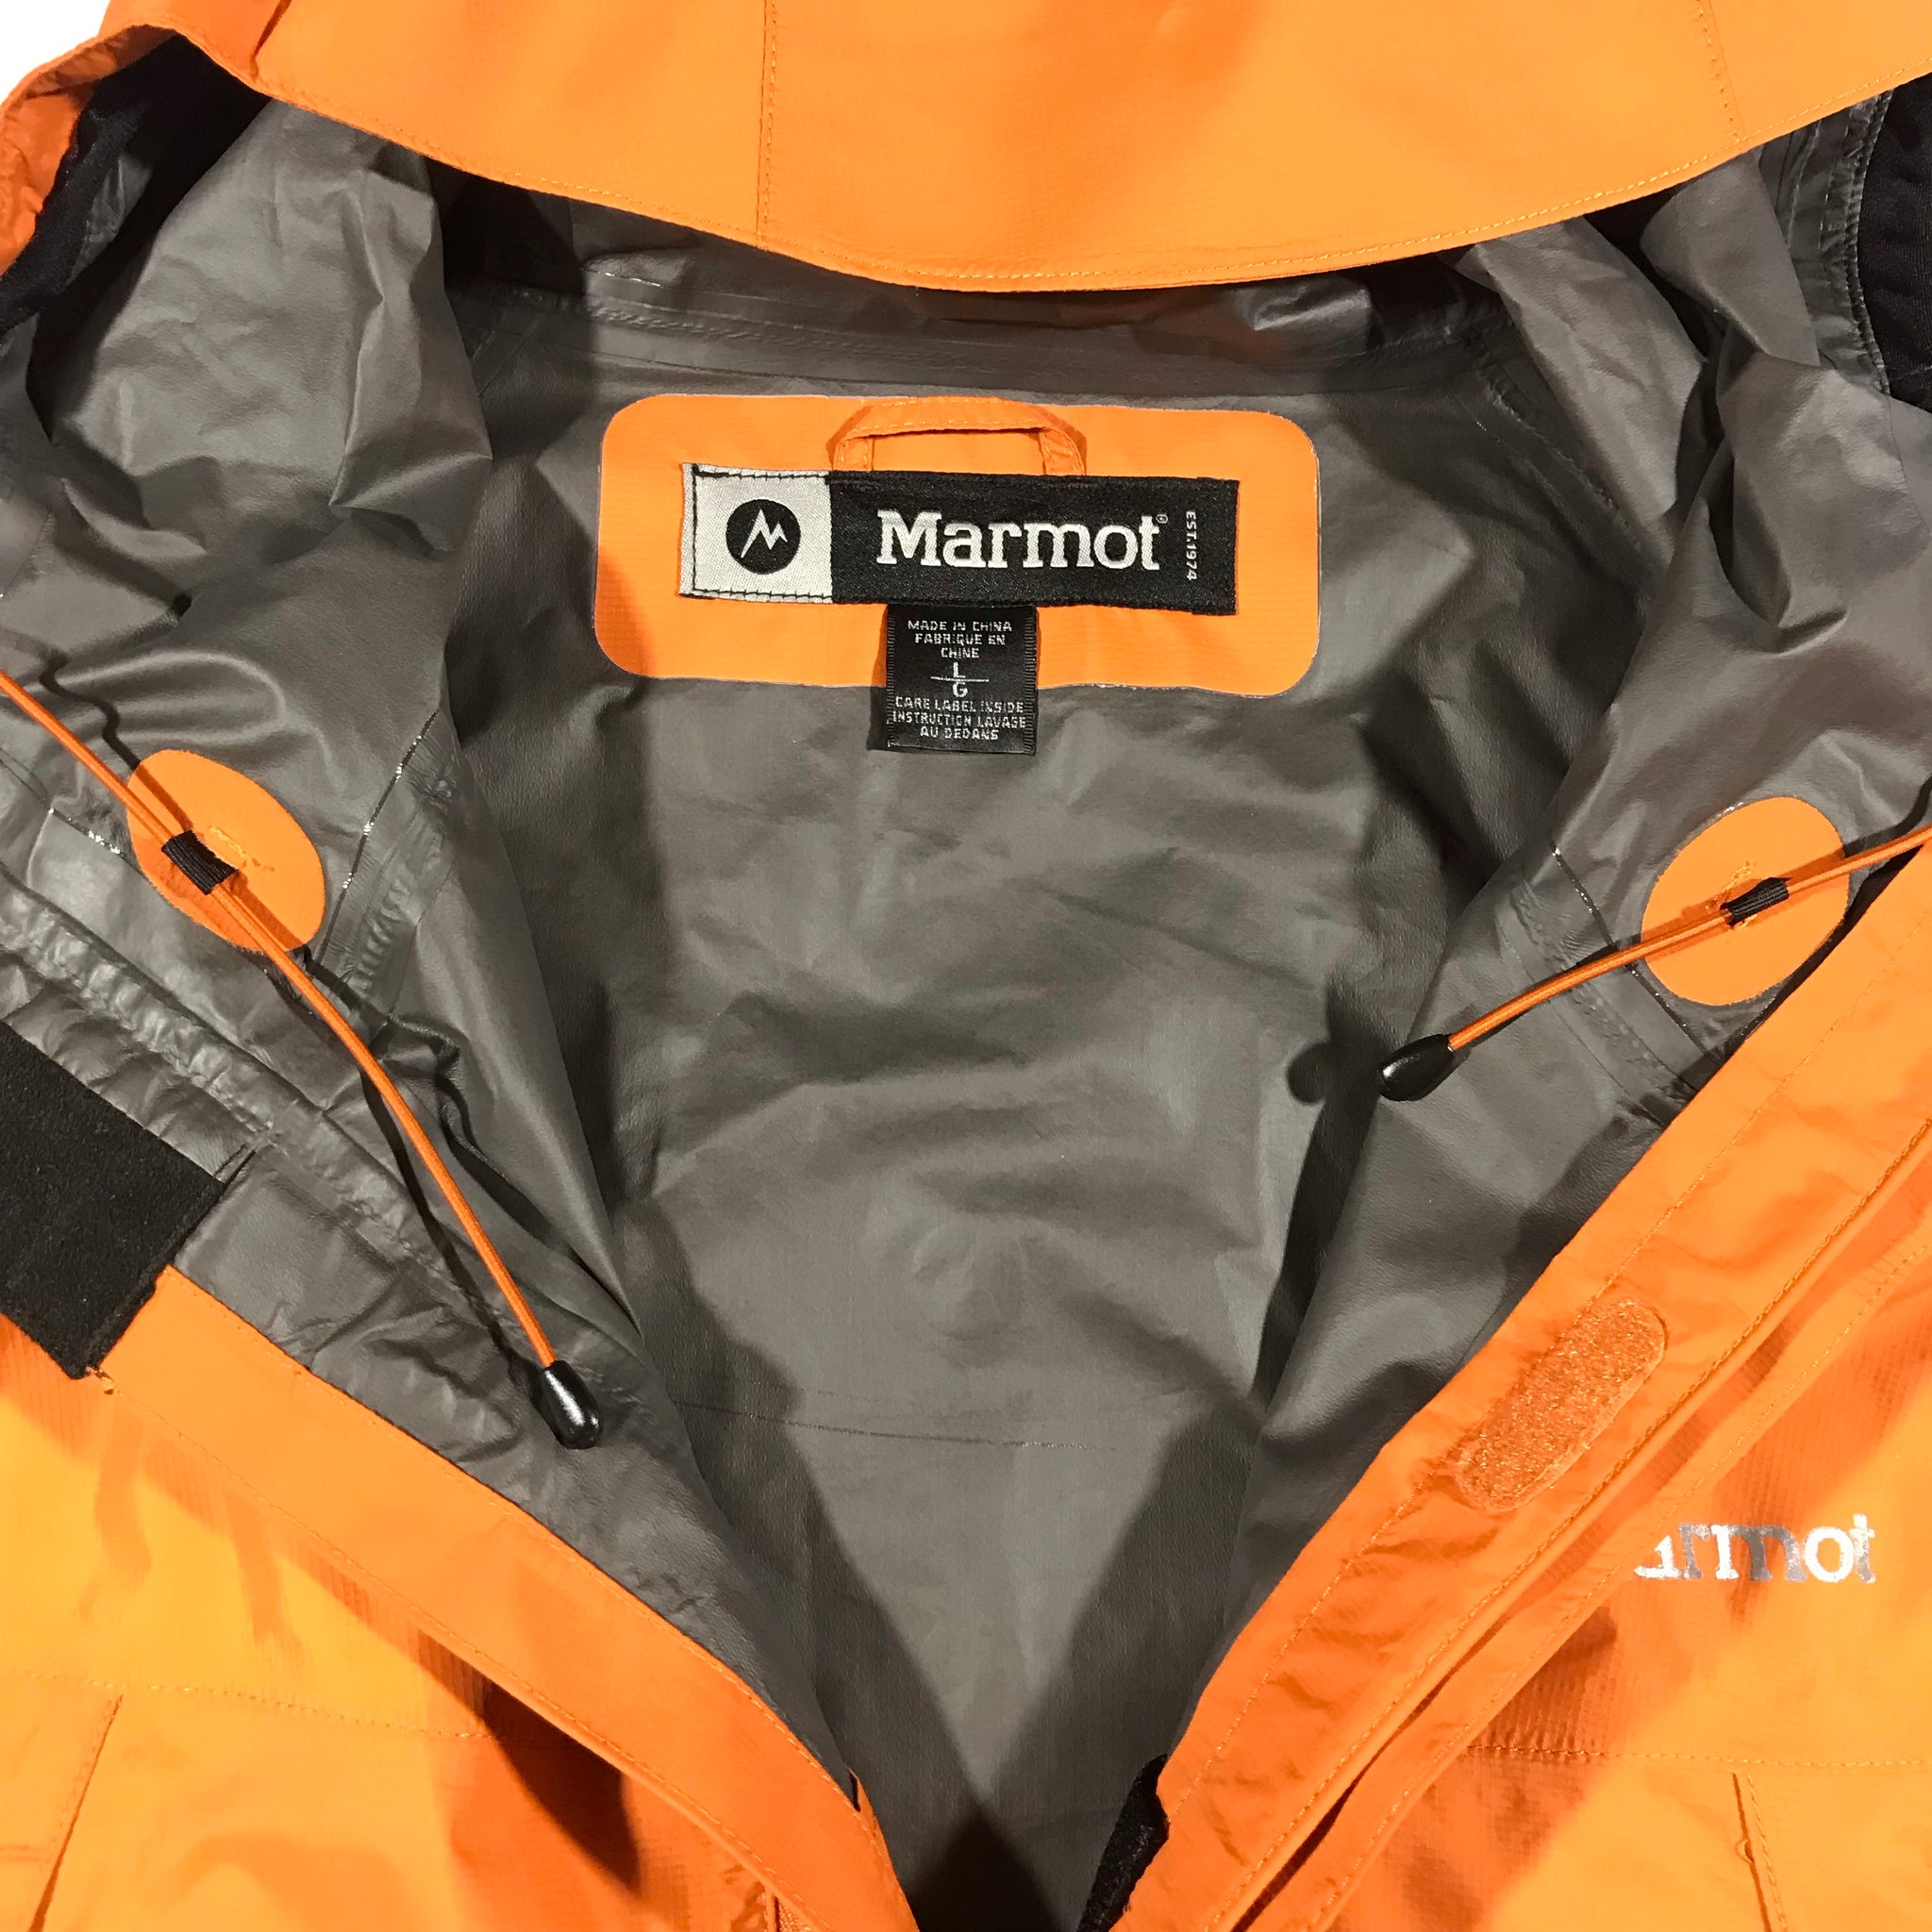 Marmot light weight goretex jacket. large